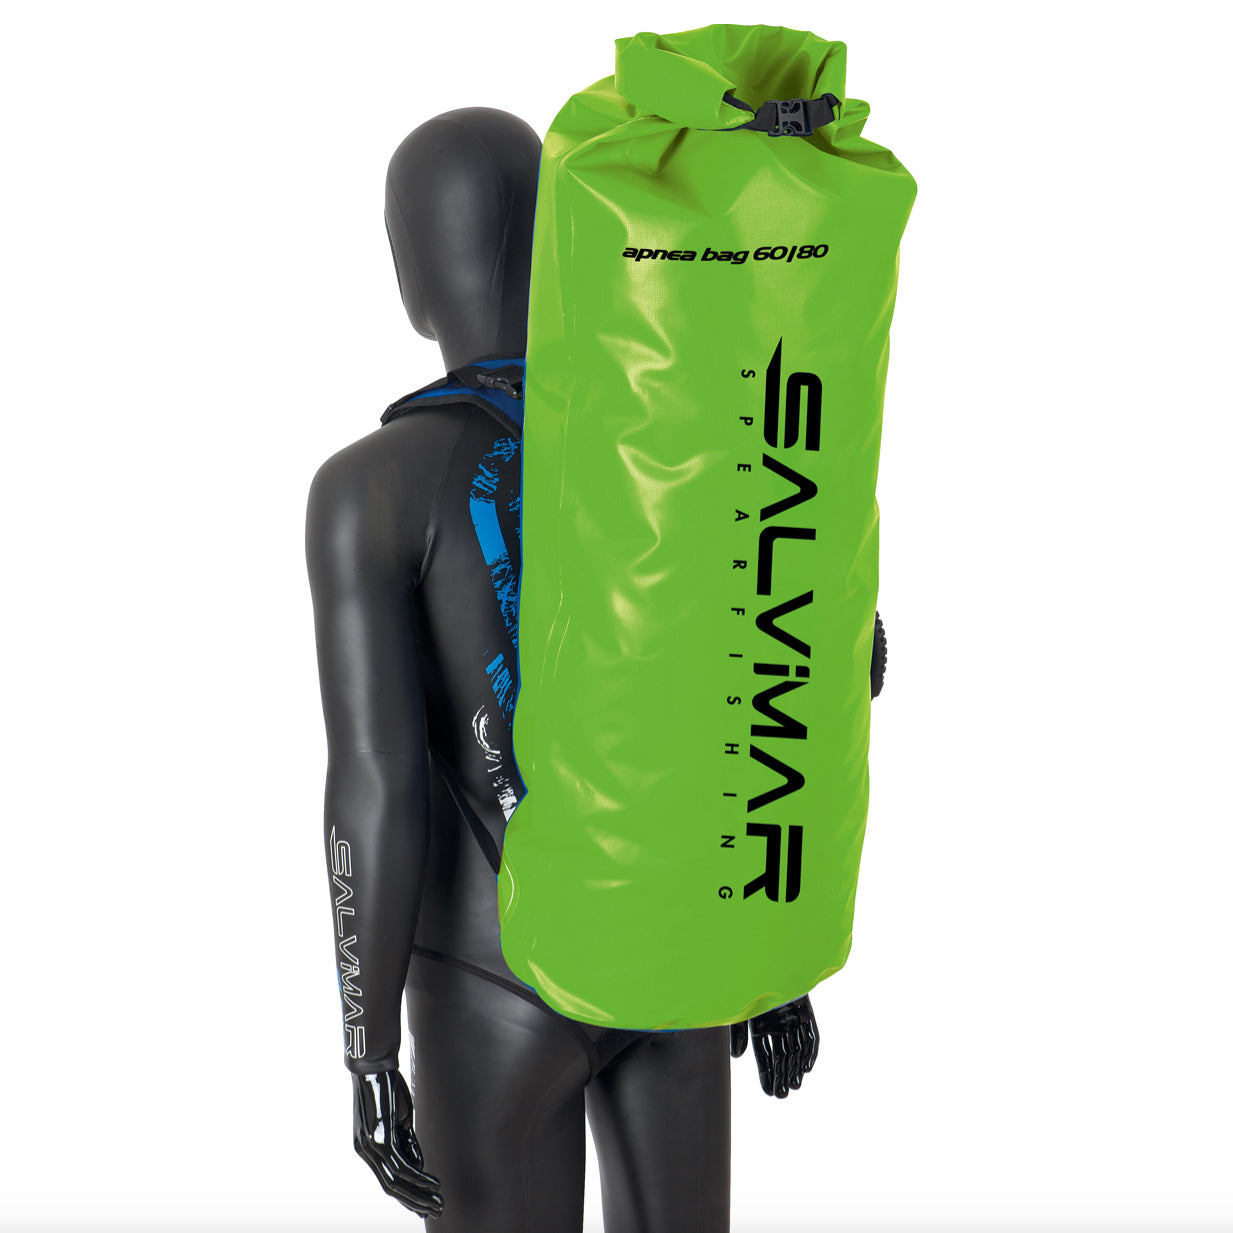 Salvimar Dry backpack 60/80 dykkesekk